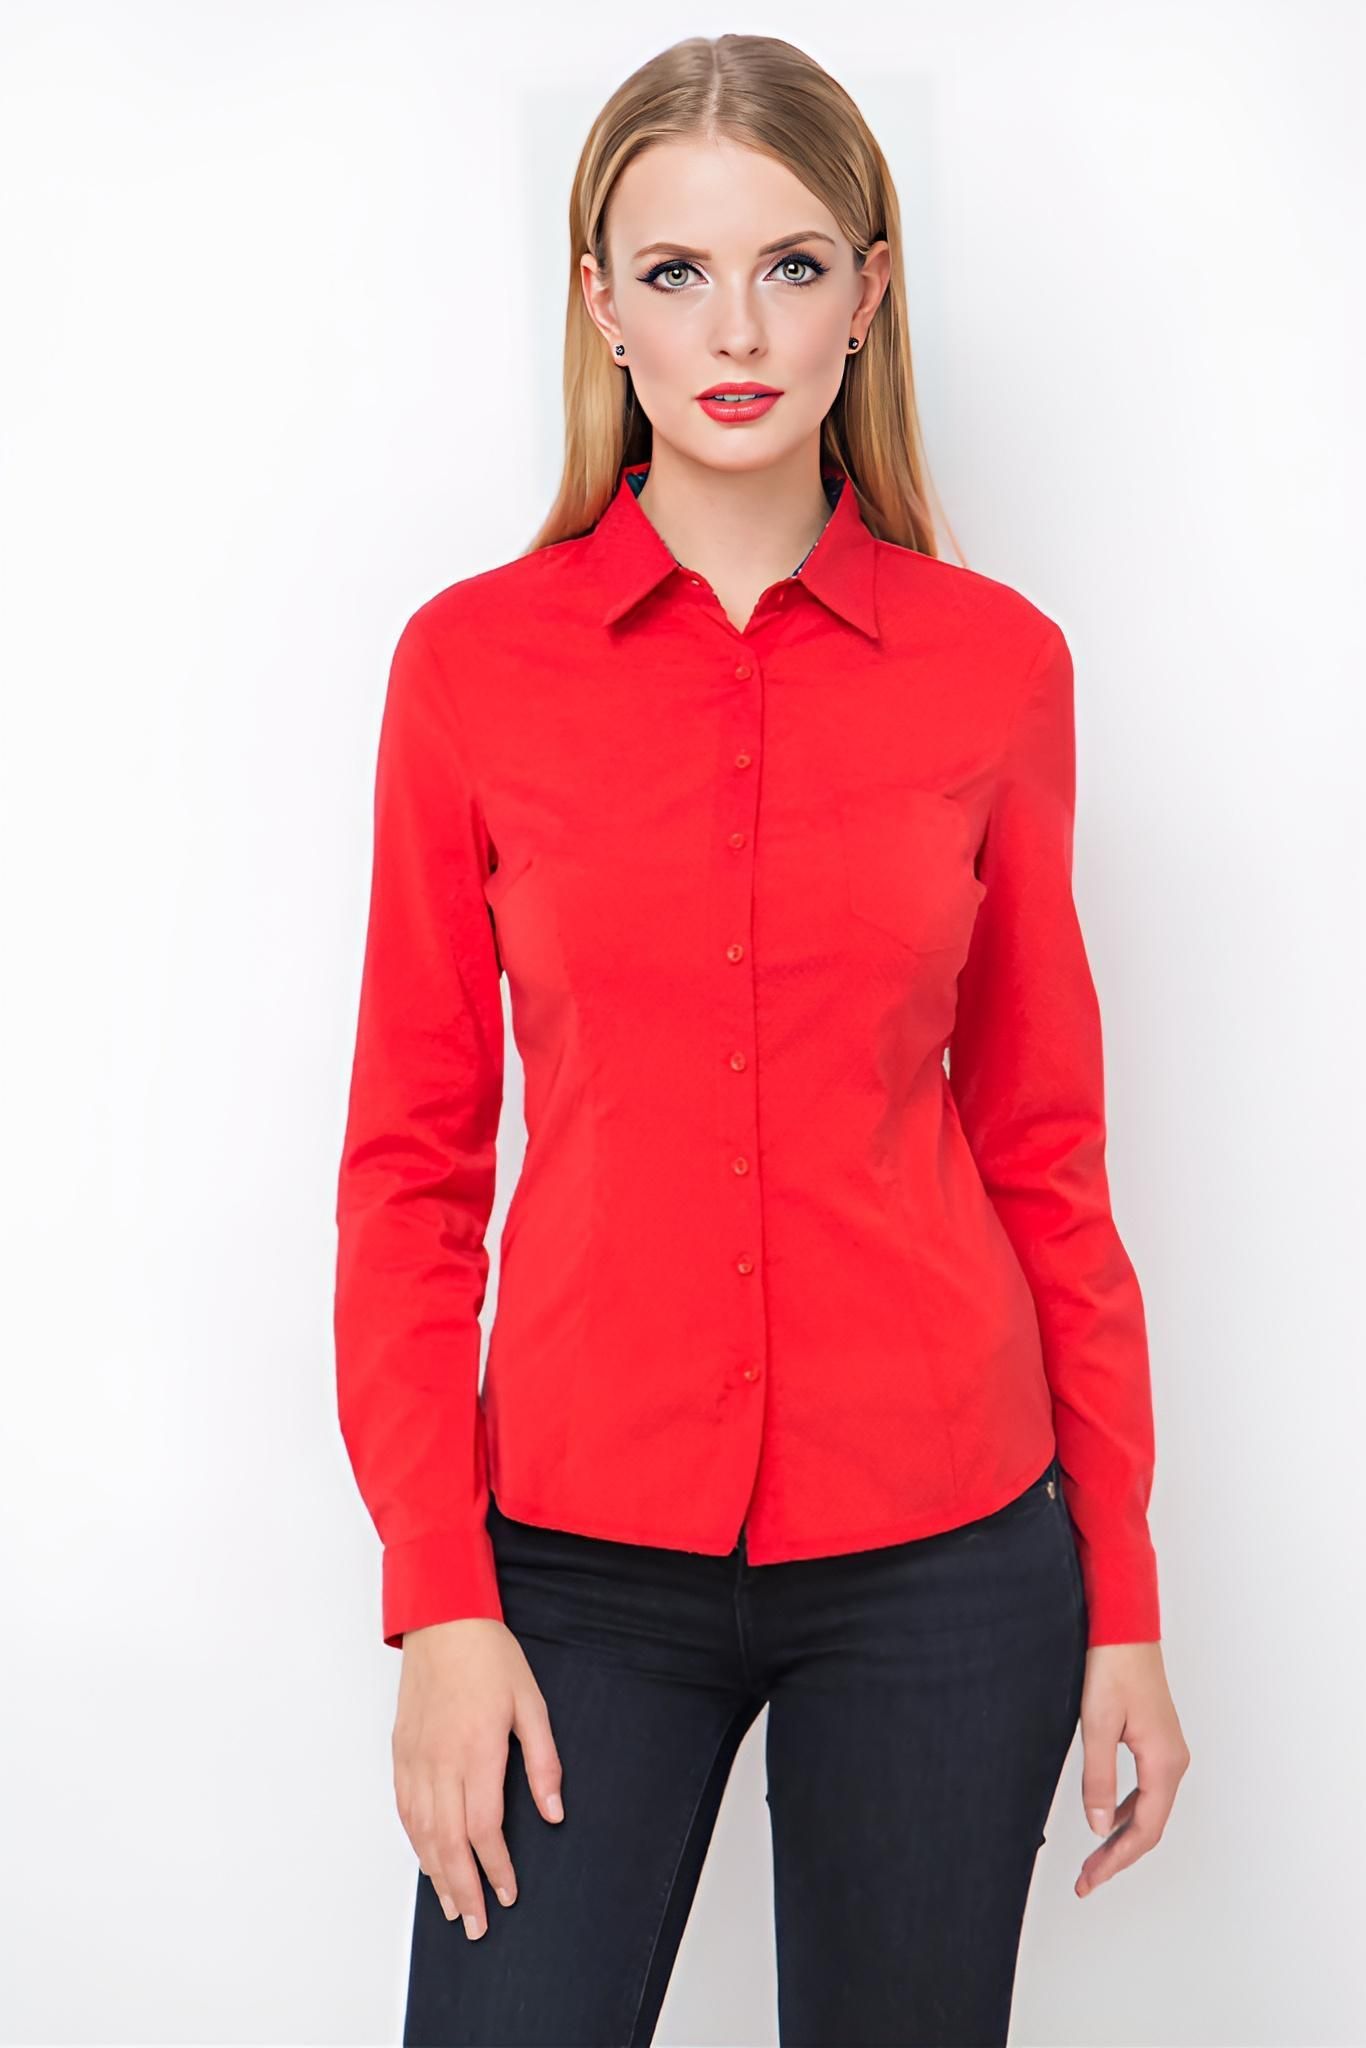 Блузки красного цвета. Красная рубашка женская. Красная блузка. Рубашка красная жениски. Красная блузка рубашка женская.